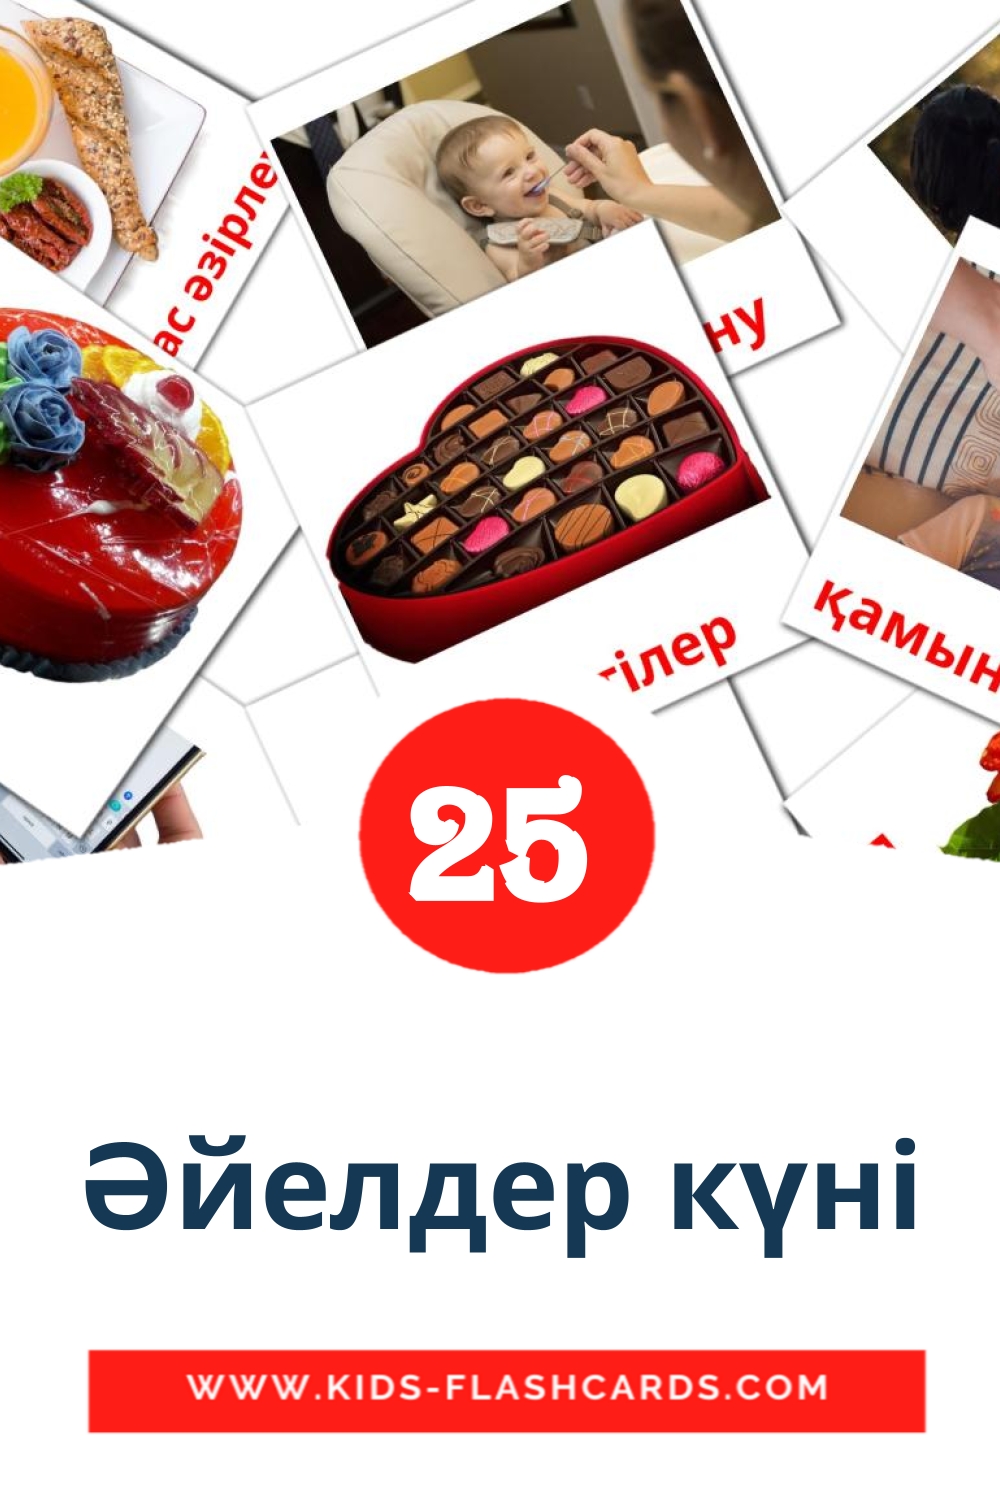 25 Әйелдер күні fotokaarten voor kleuters in het kazakh